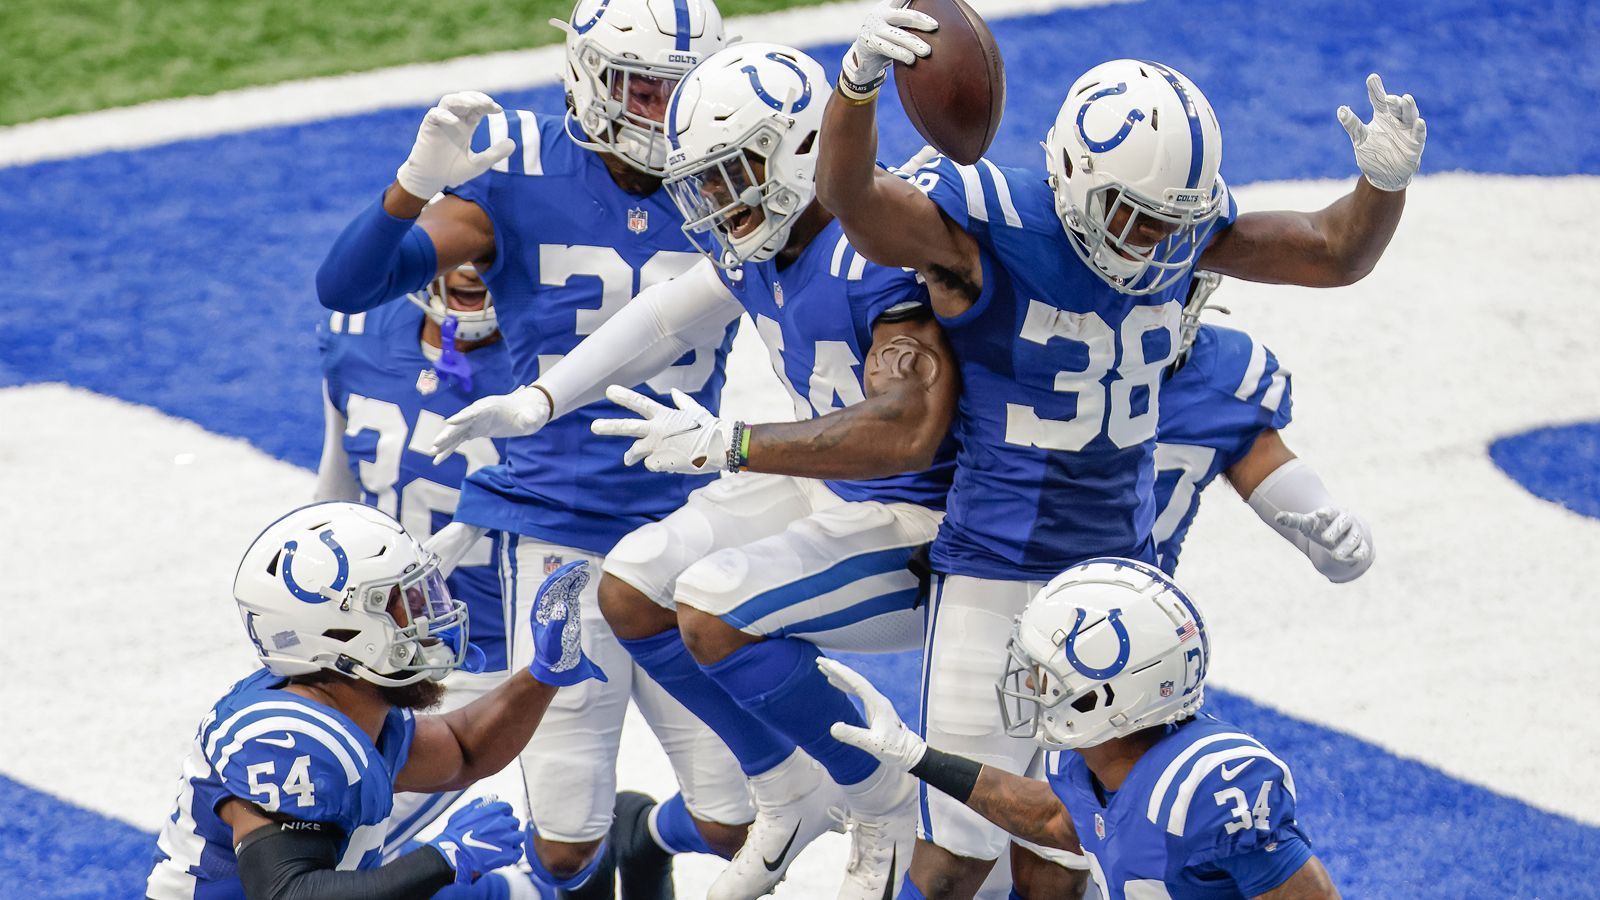 
                <strong>Defense: Indianapolis Colts - 28 Punkte</strong><br>
                Sam Darnold muss gegen die Indianapolis Colts schon wieder Geister gesehen haben - anders sind die hanebüchenen drei Interceptions - zwei davon Pick Sixes - des New-York-Jets-Quarterbacks eigentlich nicht zu erklären. Fantasy-Besitzer der Colts-Defense wird es freuen: Zwei Touchdowns sowie zwei Sacks und nur sieben zugelassene Punkte bescherten ihnen am 3. Spieltag starke 28 Punkte.
              